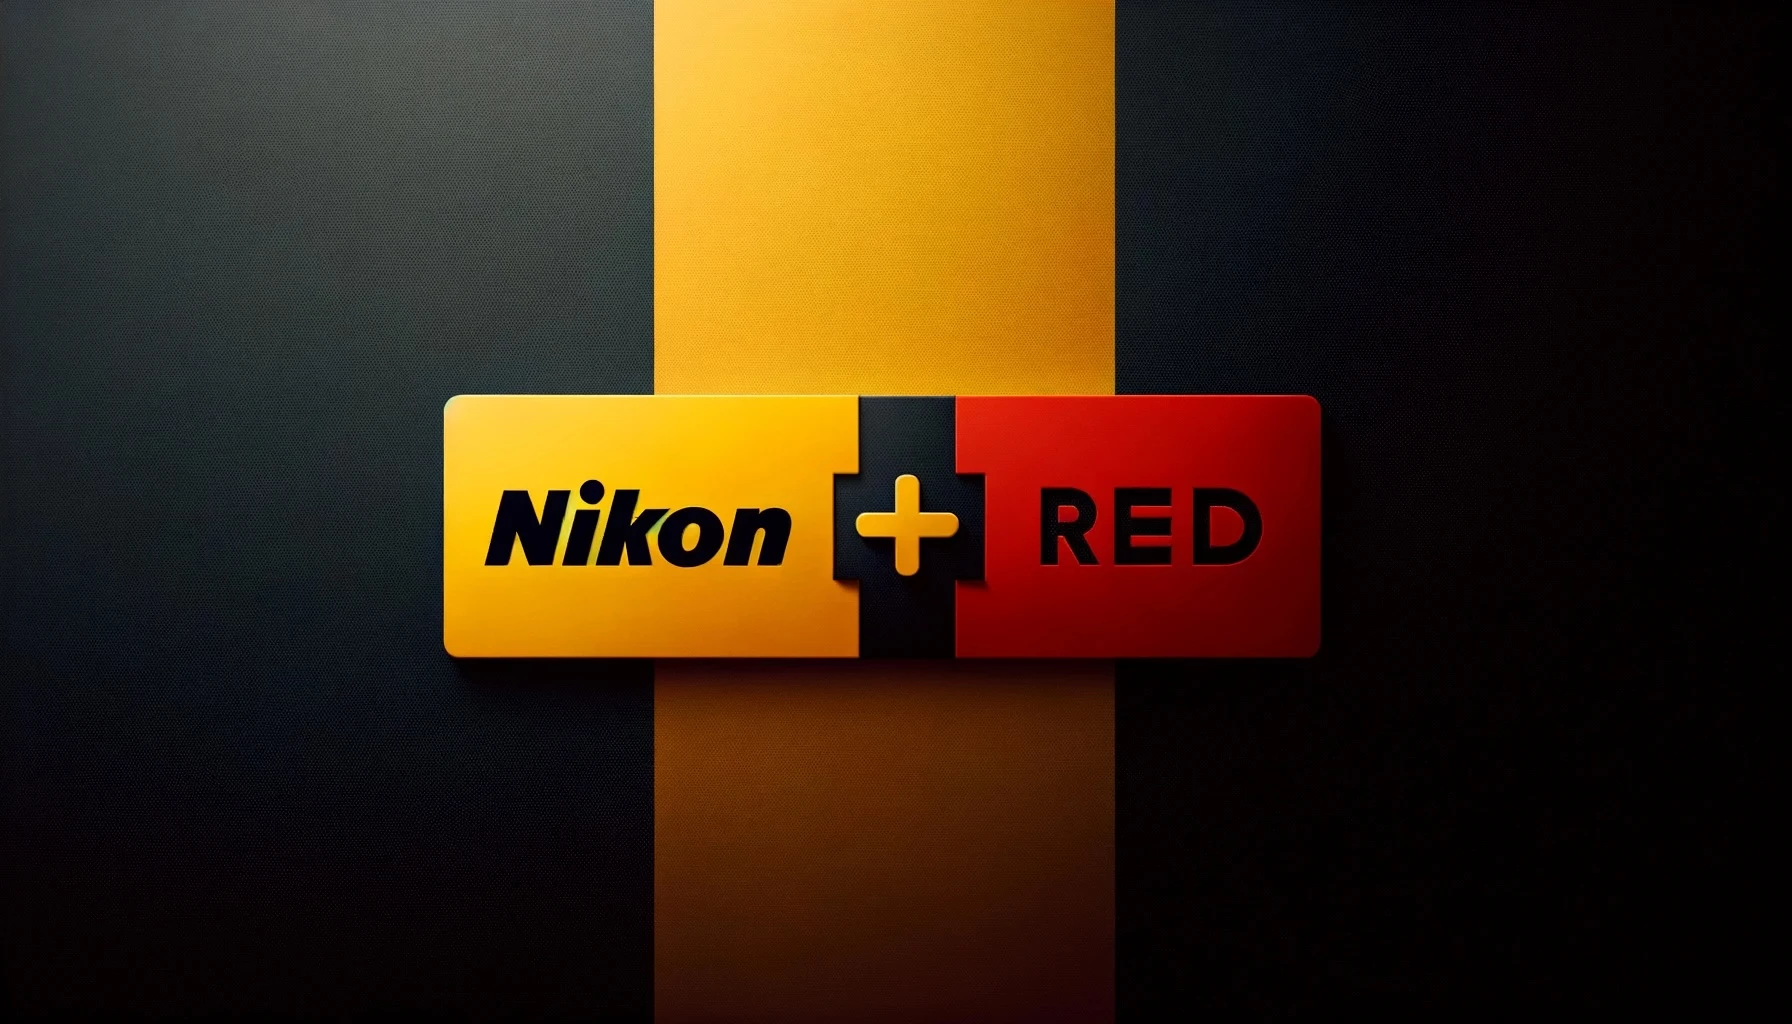 Nikon Percaya Diri dengan Mengakuisisi RED, Pangsa Pasar Akan Tumbuh